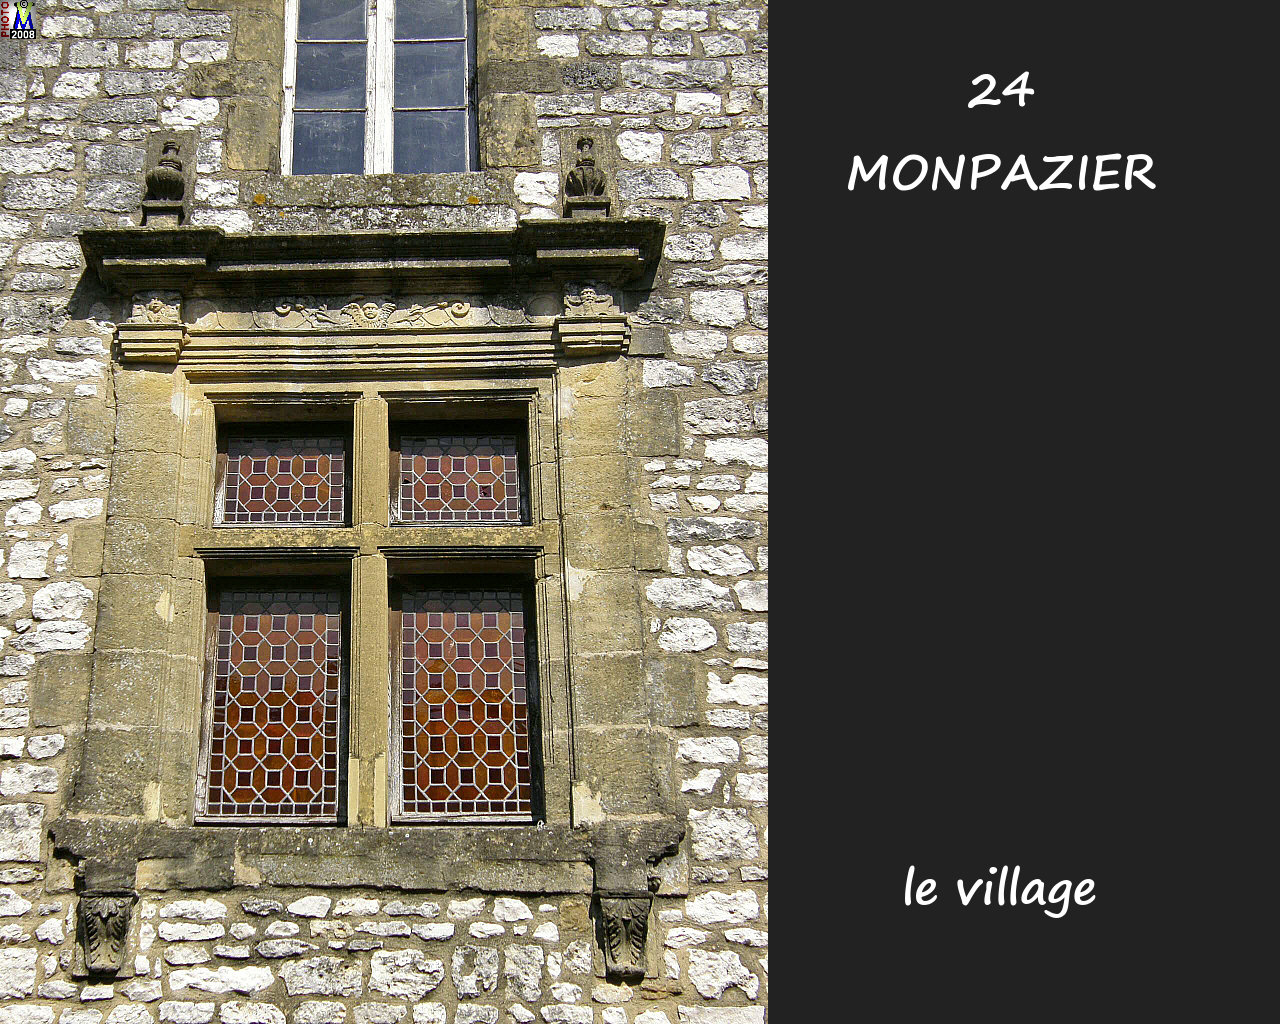 24MONPAZIER_village_182.jpg